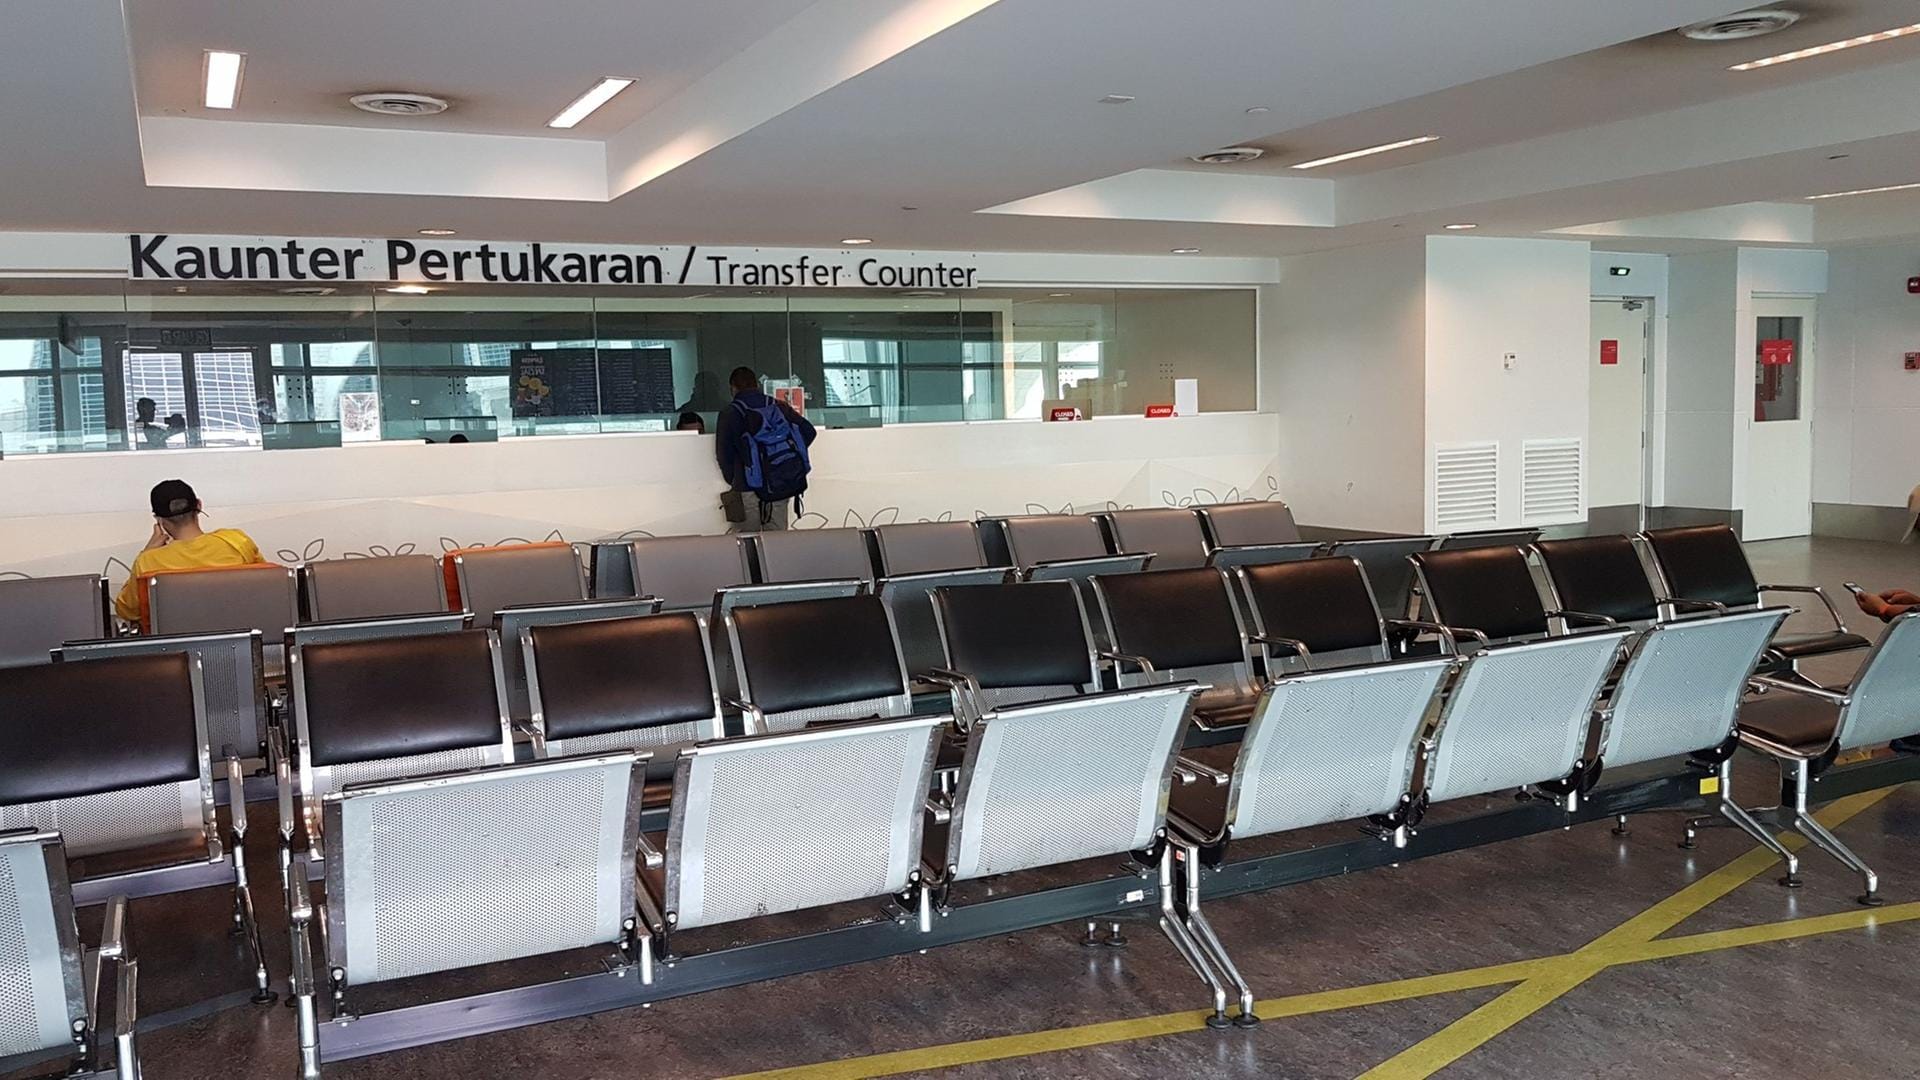 Warten am Flughafen: Anfangs hat der Syrer auf den Sitzreihen geschlafen. Die Matratze bekam er erst später von Kanadiern geschenkt.